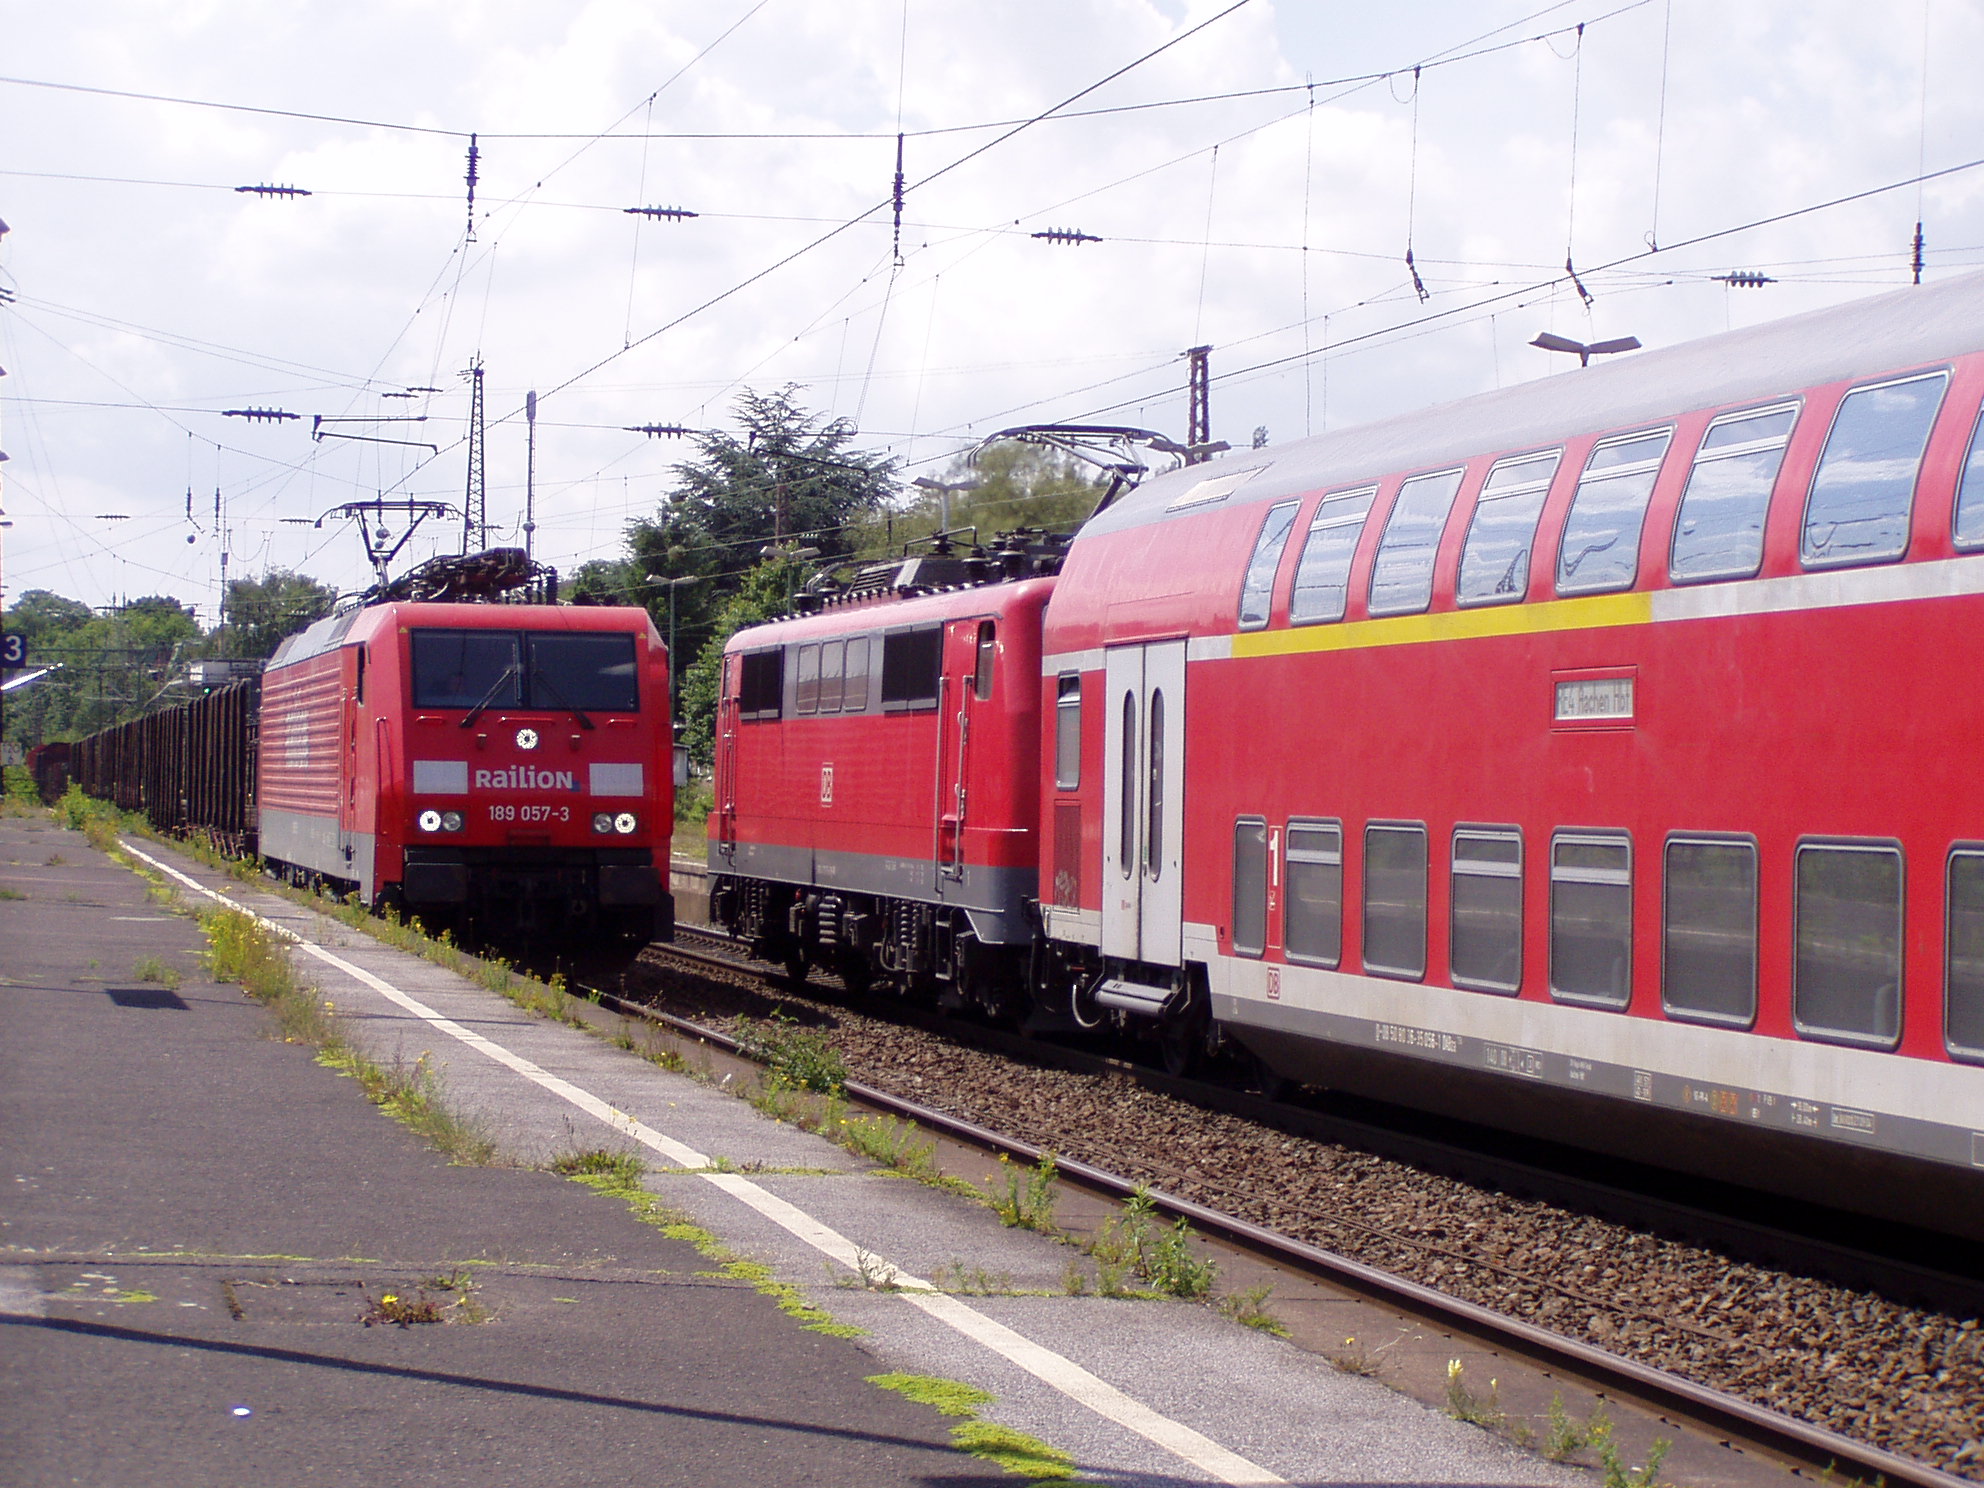 A német vasúton a mélypont 95-ben volt, de a 2008-as válság őket is súlyosan érintette: közel 20 ezer millió árutonna-kilométerrel csökkent az árufuvarozási teljesítmény. A személyforgalom ezzel szemben folyamatosan javul, a kevés töretlenül fejlődő ágazat egyike<br>(fotó: Mózes Krisztián)